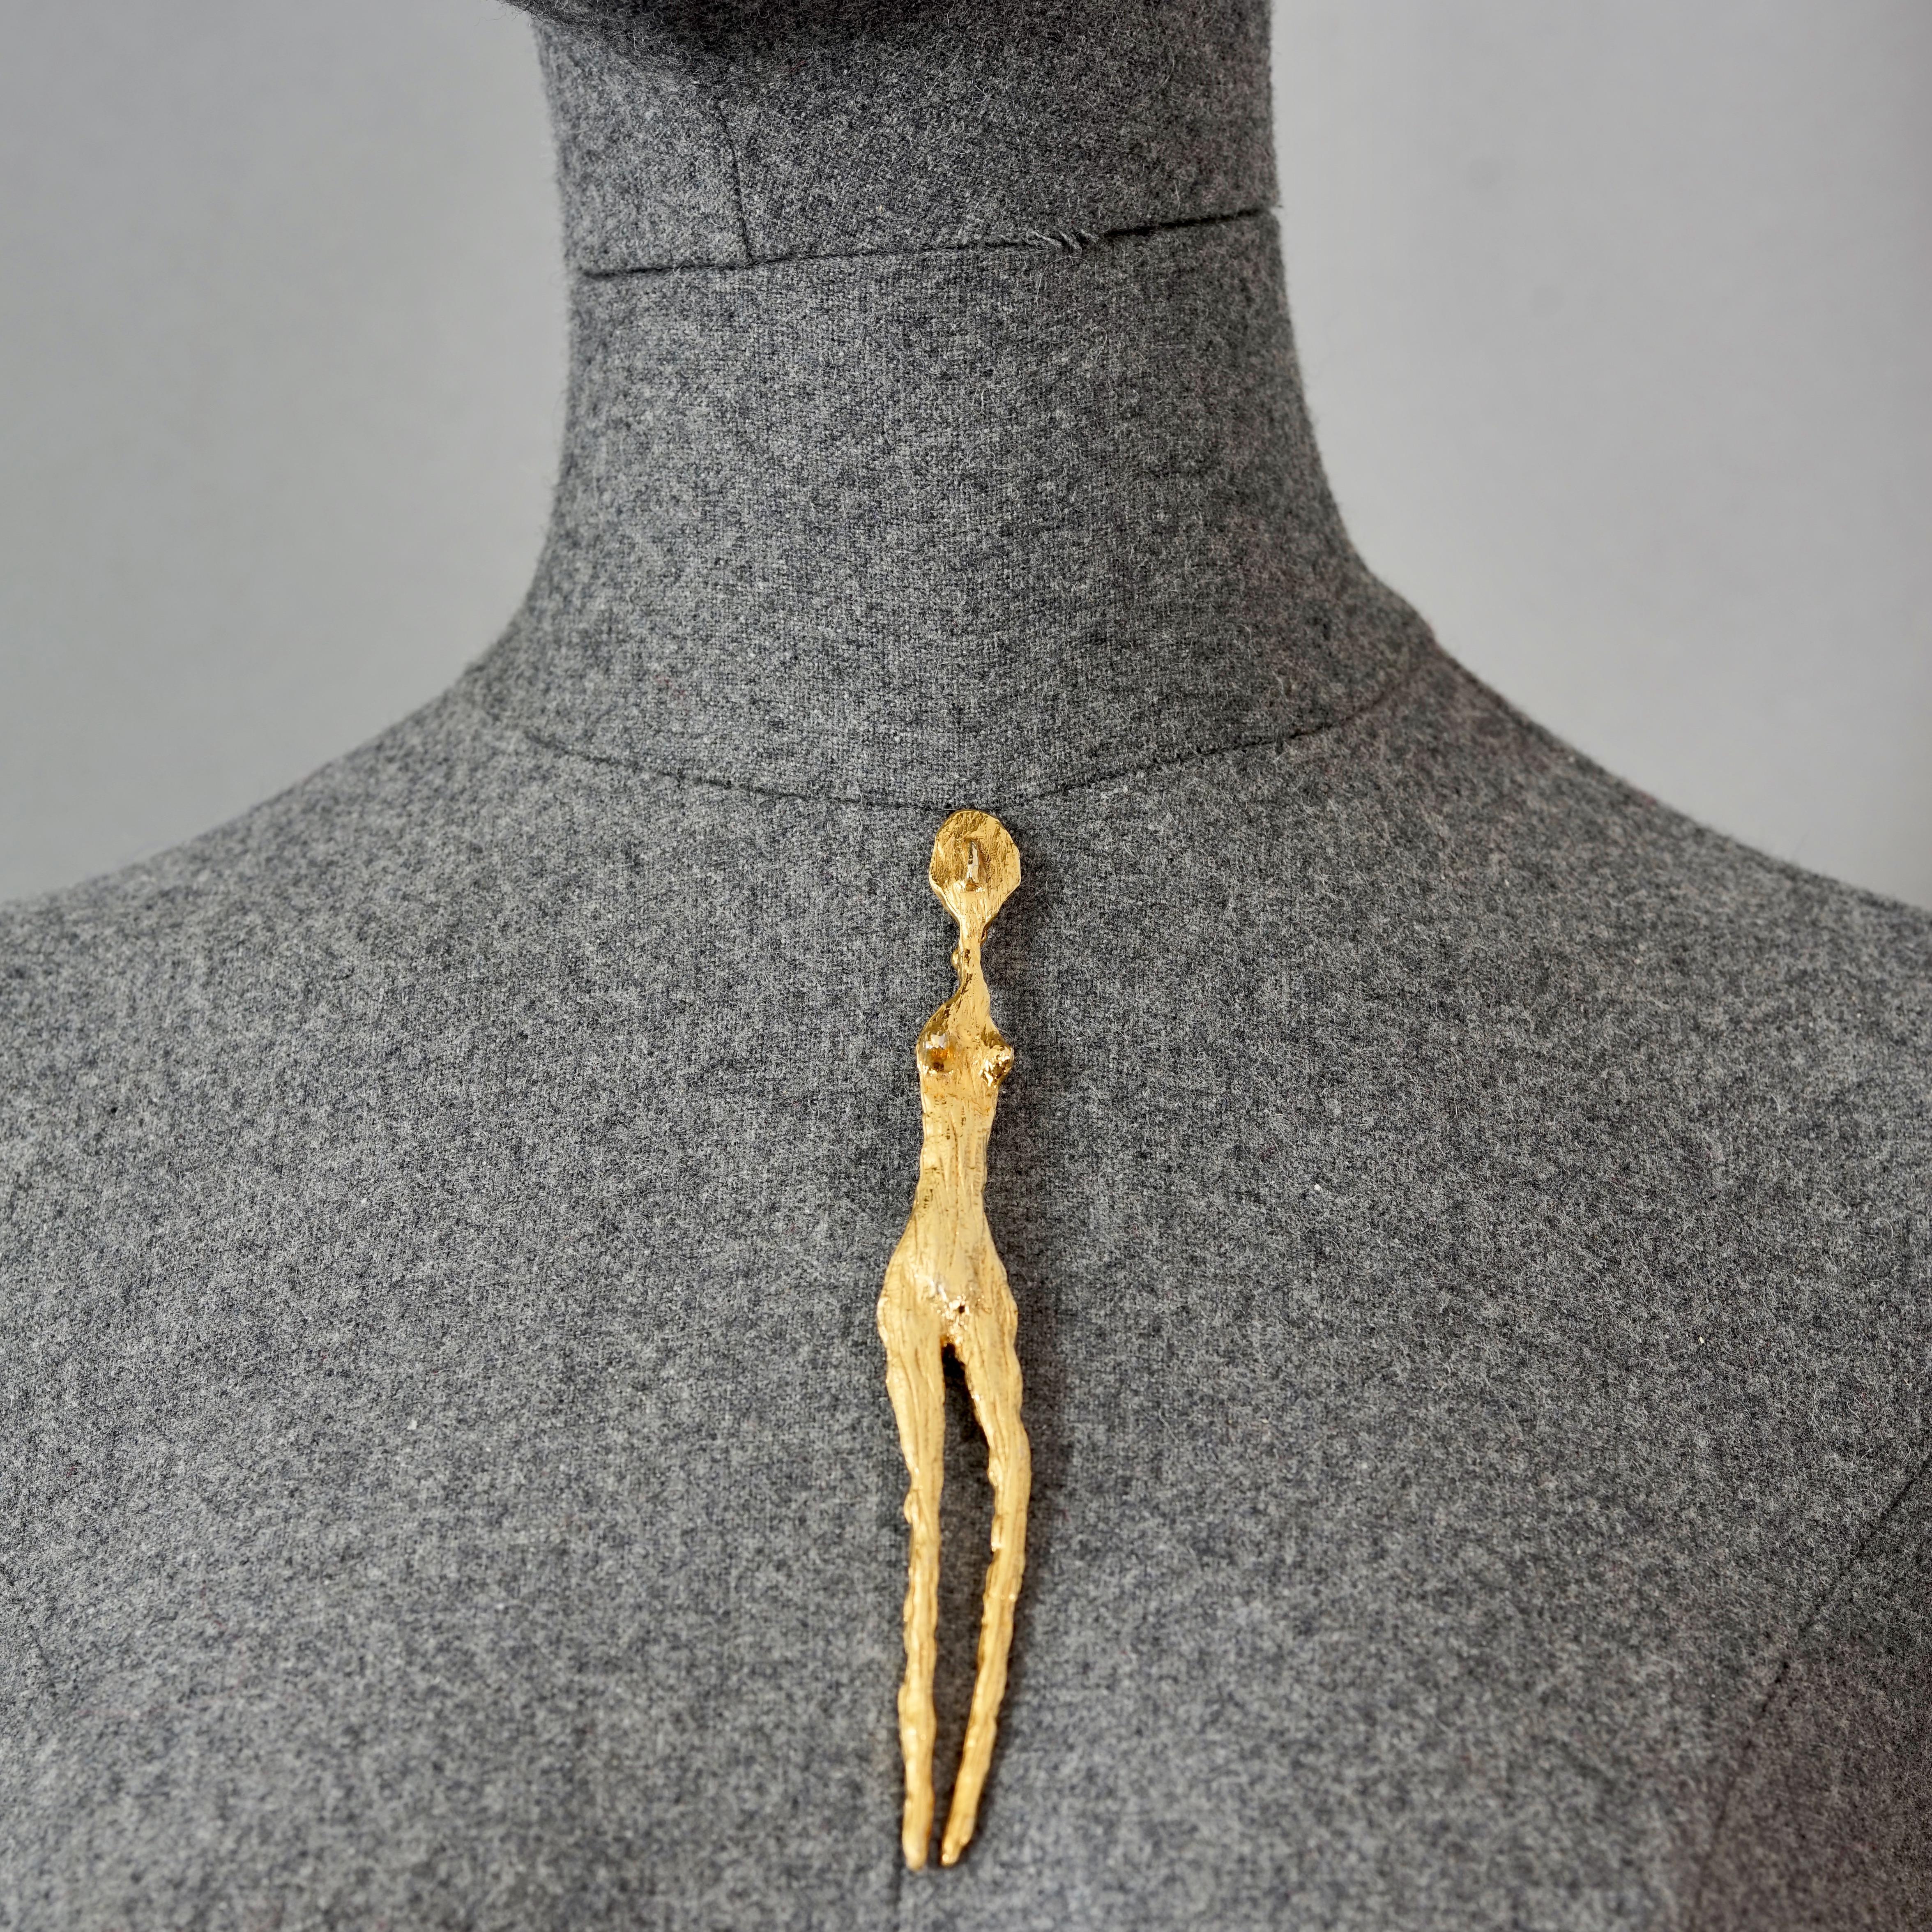 Broche vintage LINDA HATTAB PARIS texturée d'inspiration Giacometti

Mesures :
Hauteur : 5,90 pouces (15 cm)
Largeur : 0,67 pouce (1,7 cm)

CARACTÉRISTIQUES :
- 100% Authentique LINDA HATTAB PARIS.
- Broche figurative texturée et martelée inspirée